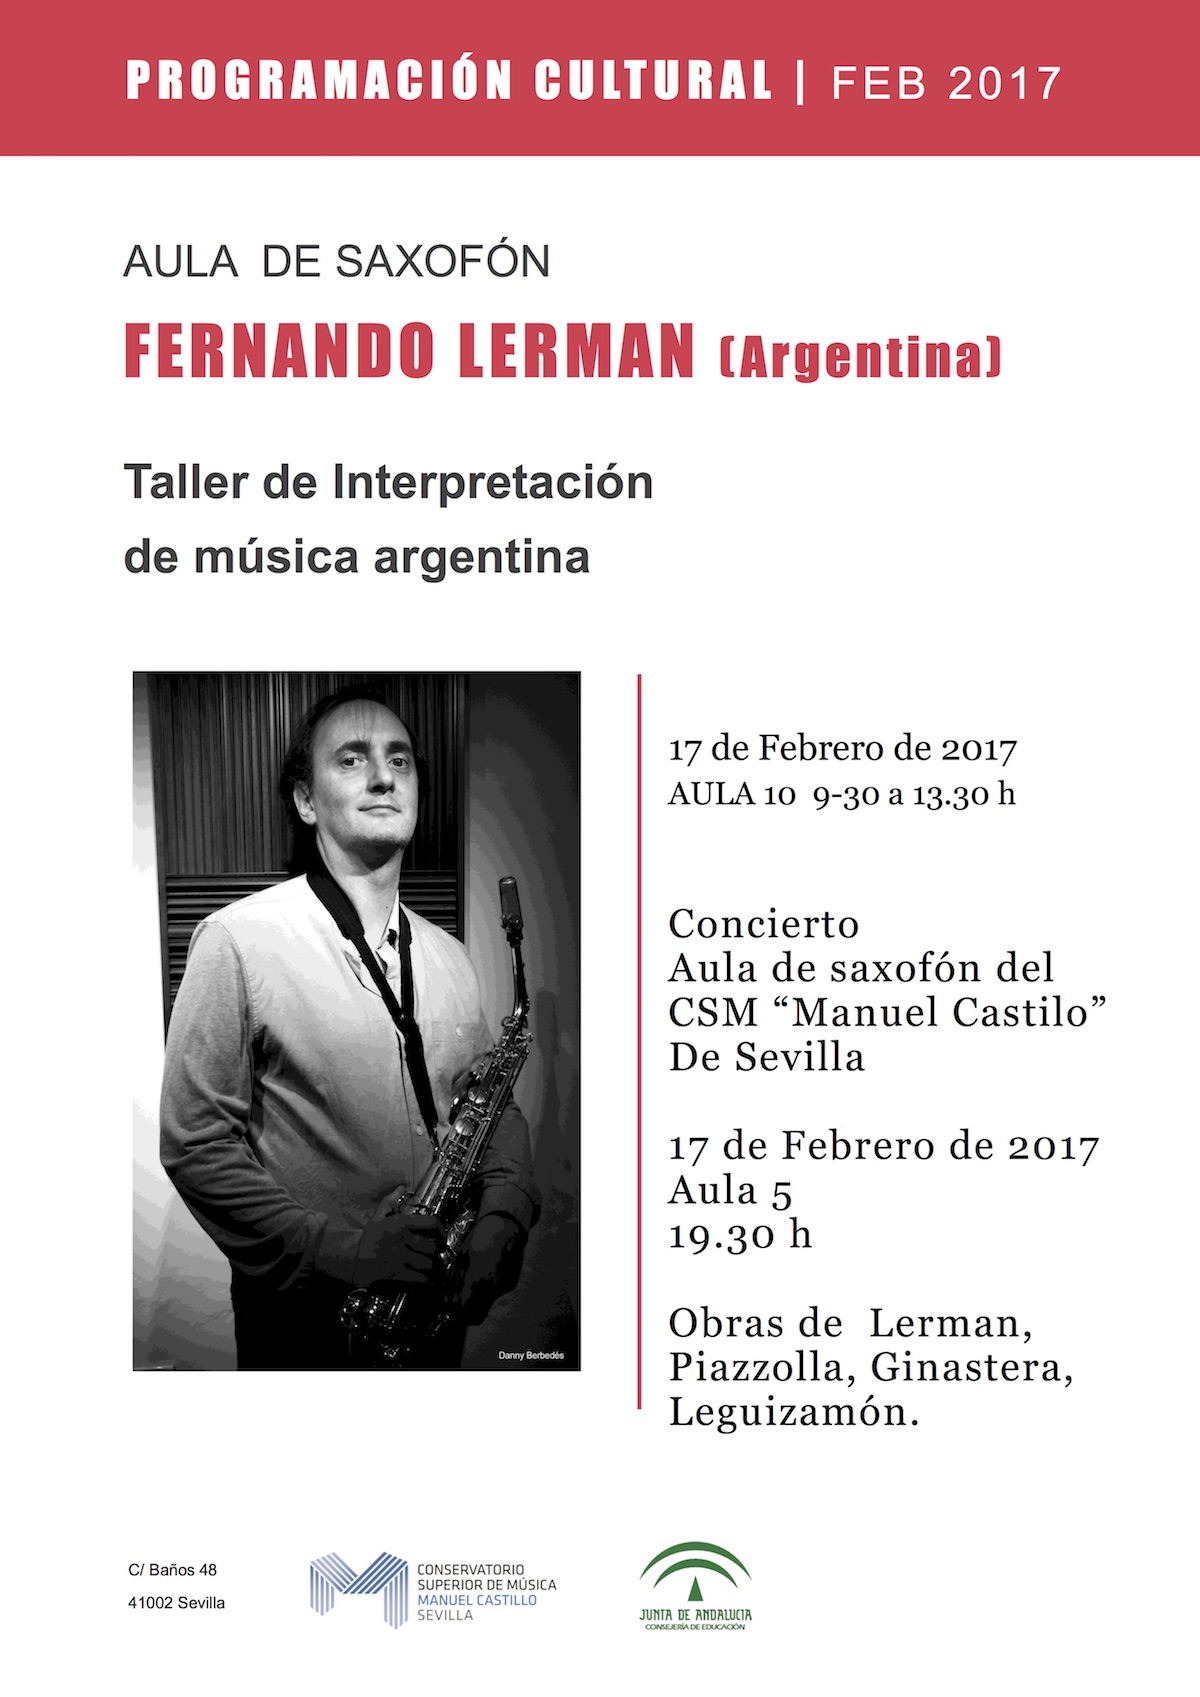 Taller de Interpretación de música argentina — Fernando Lerman